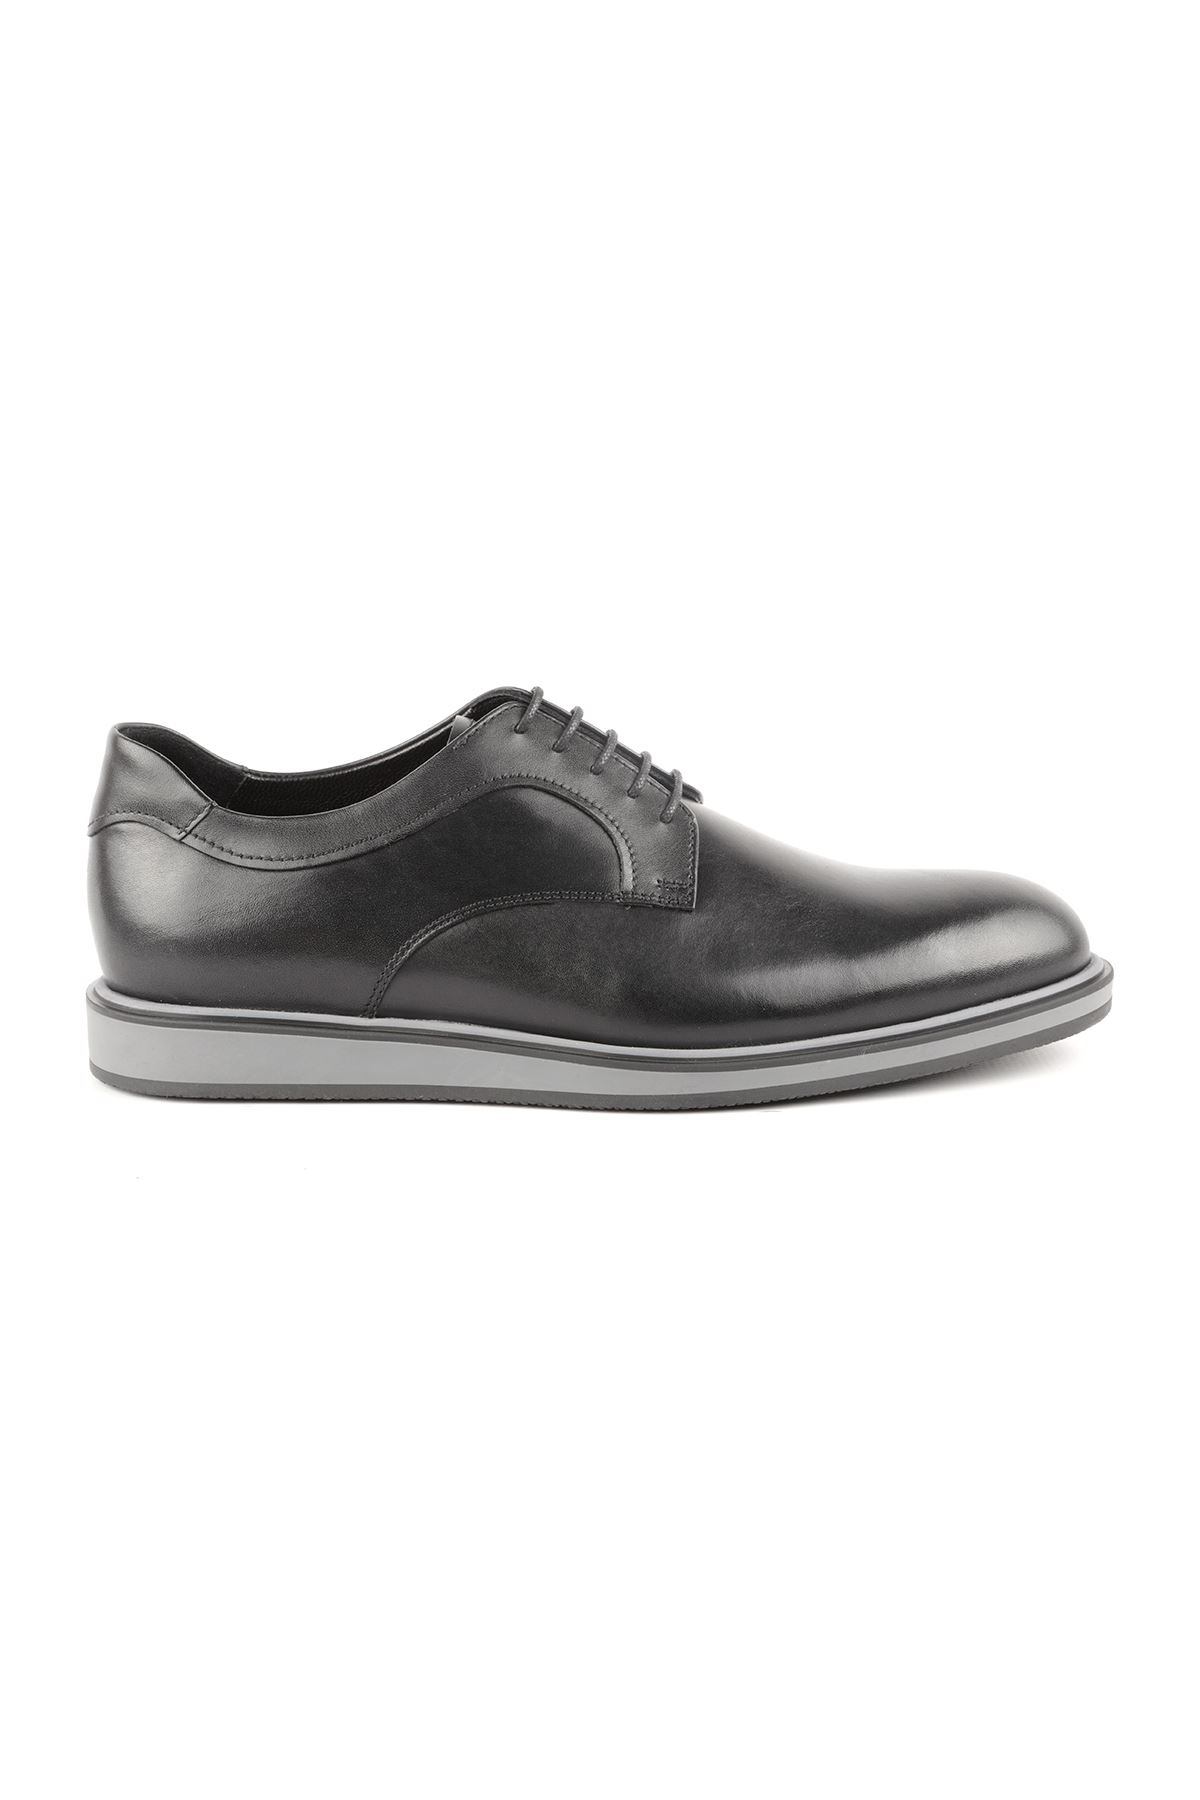 Libero L3653 Black Casual Men's Shoes